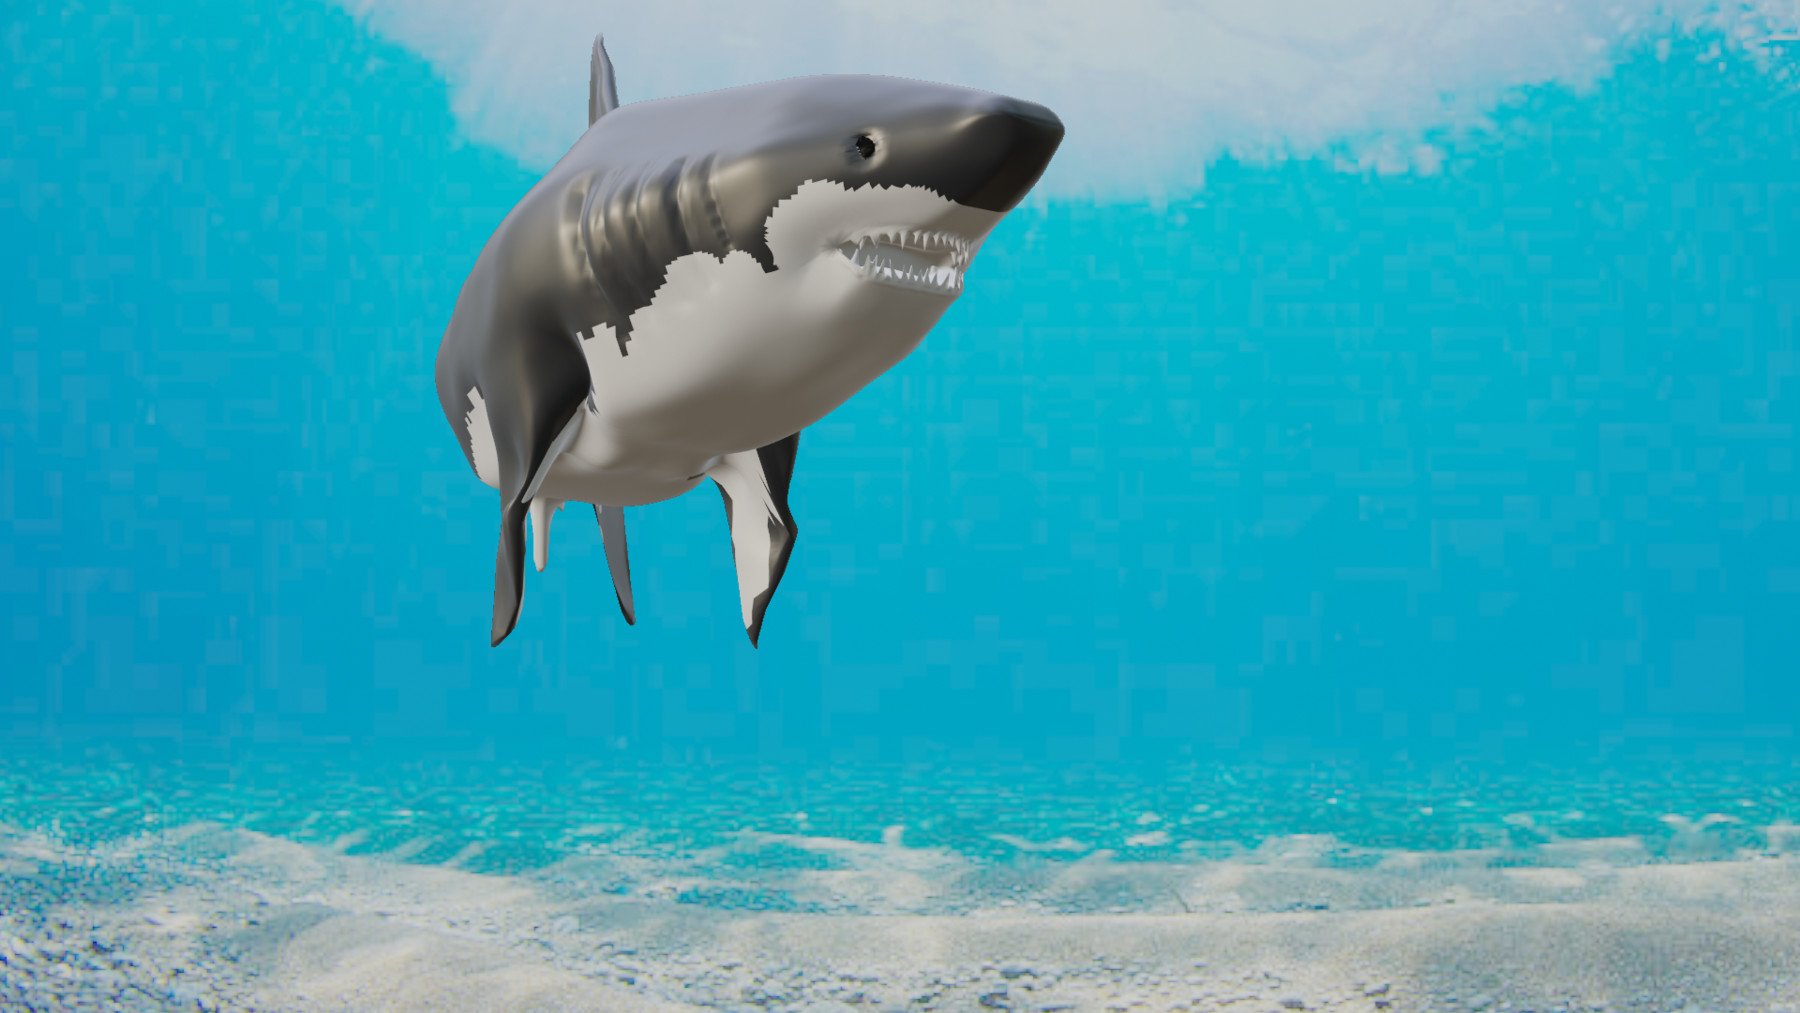 Neil Sneddon - Shark Blender 3D in FBX